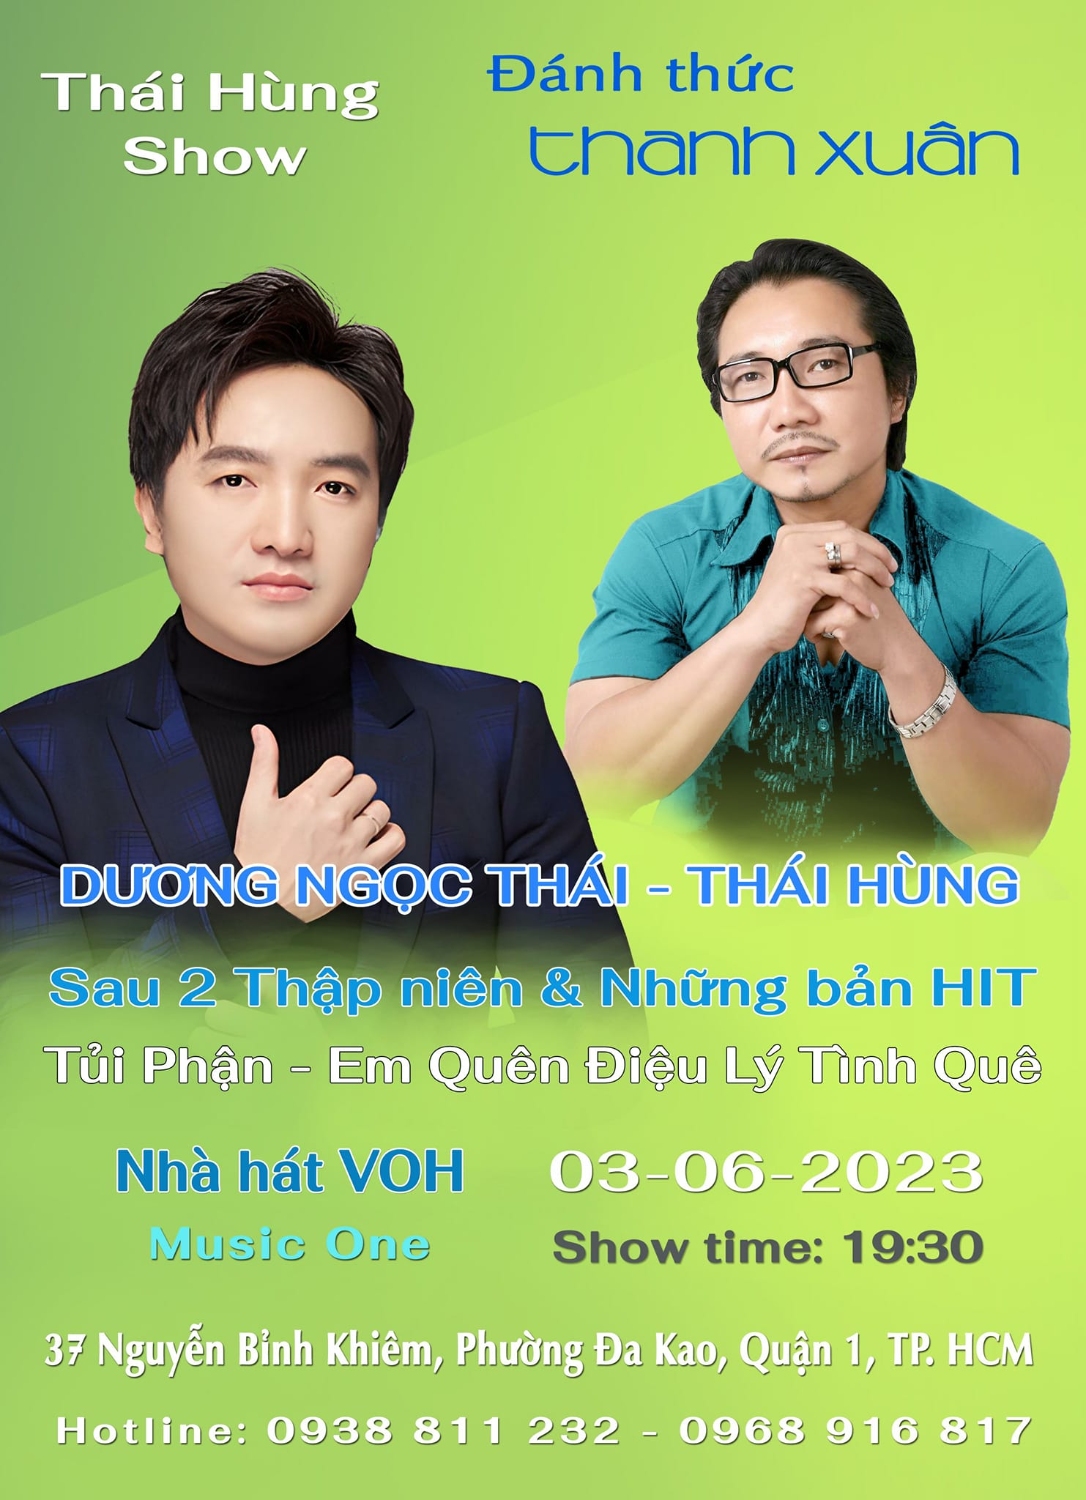 Thai Hung Show 6